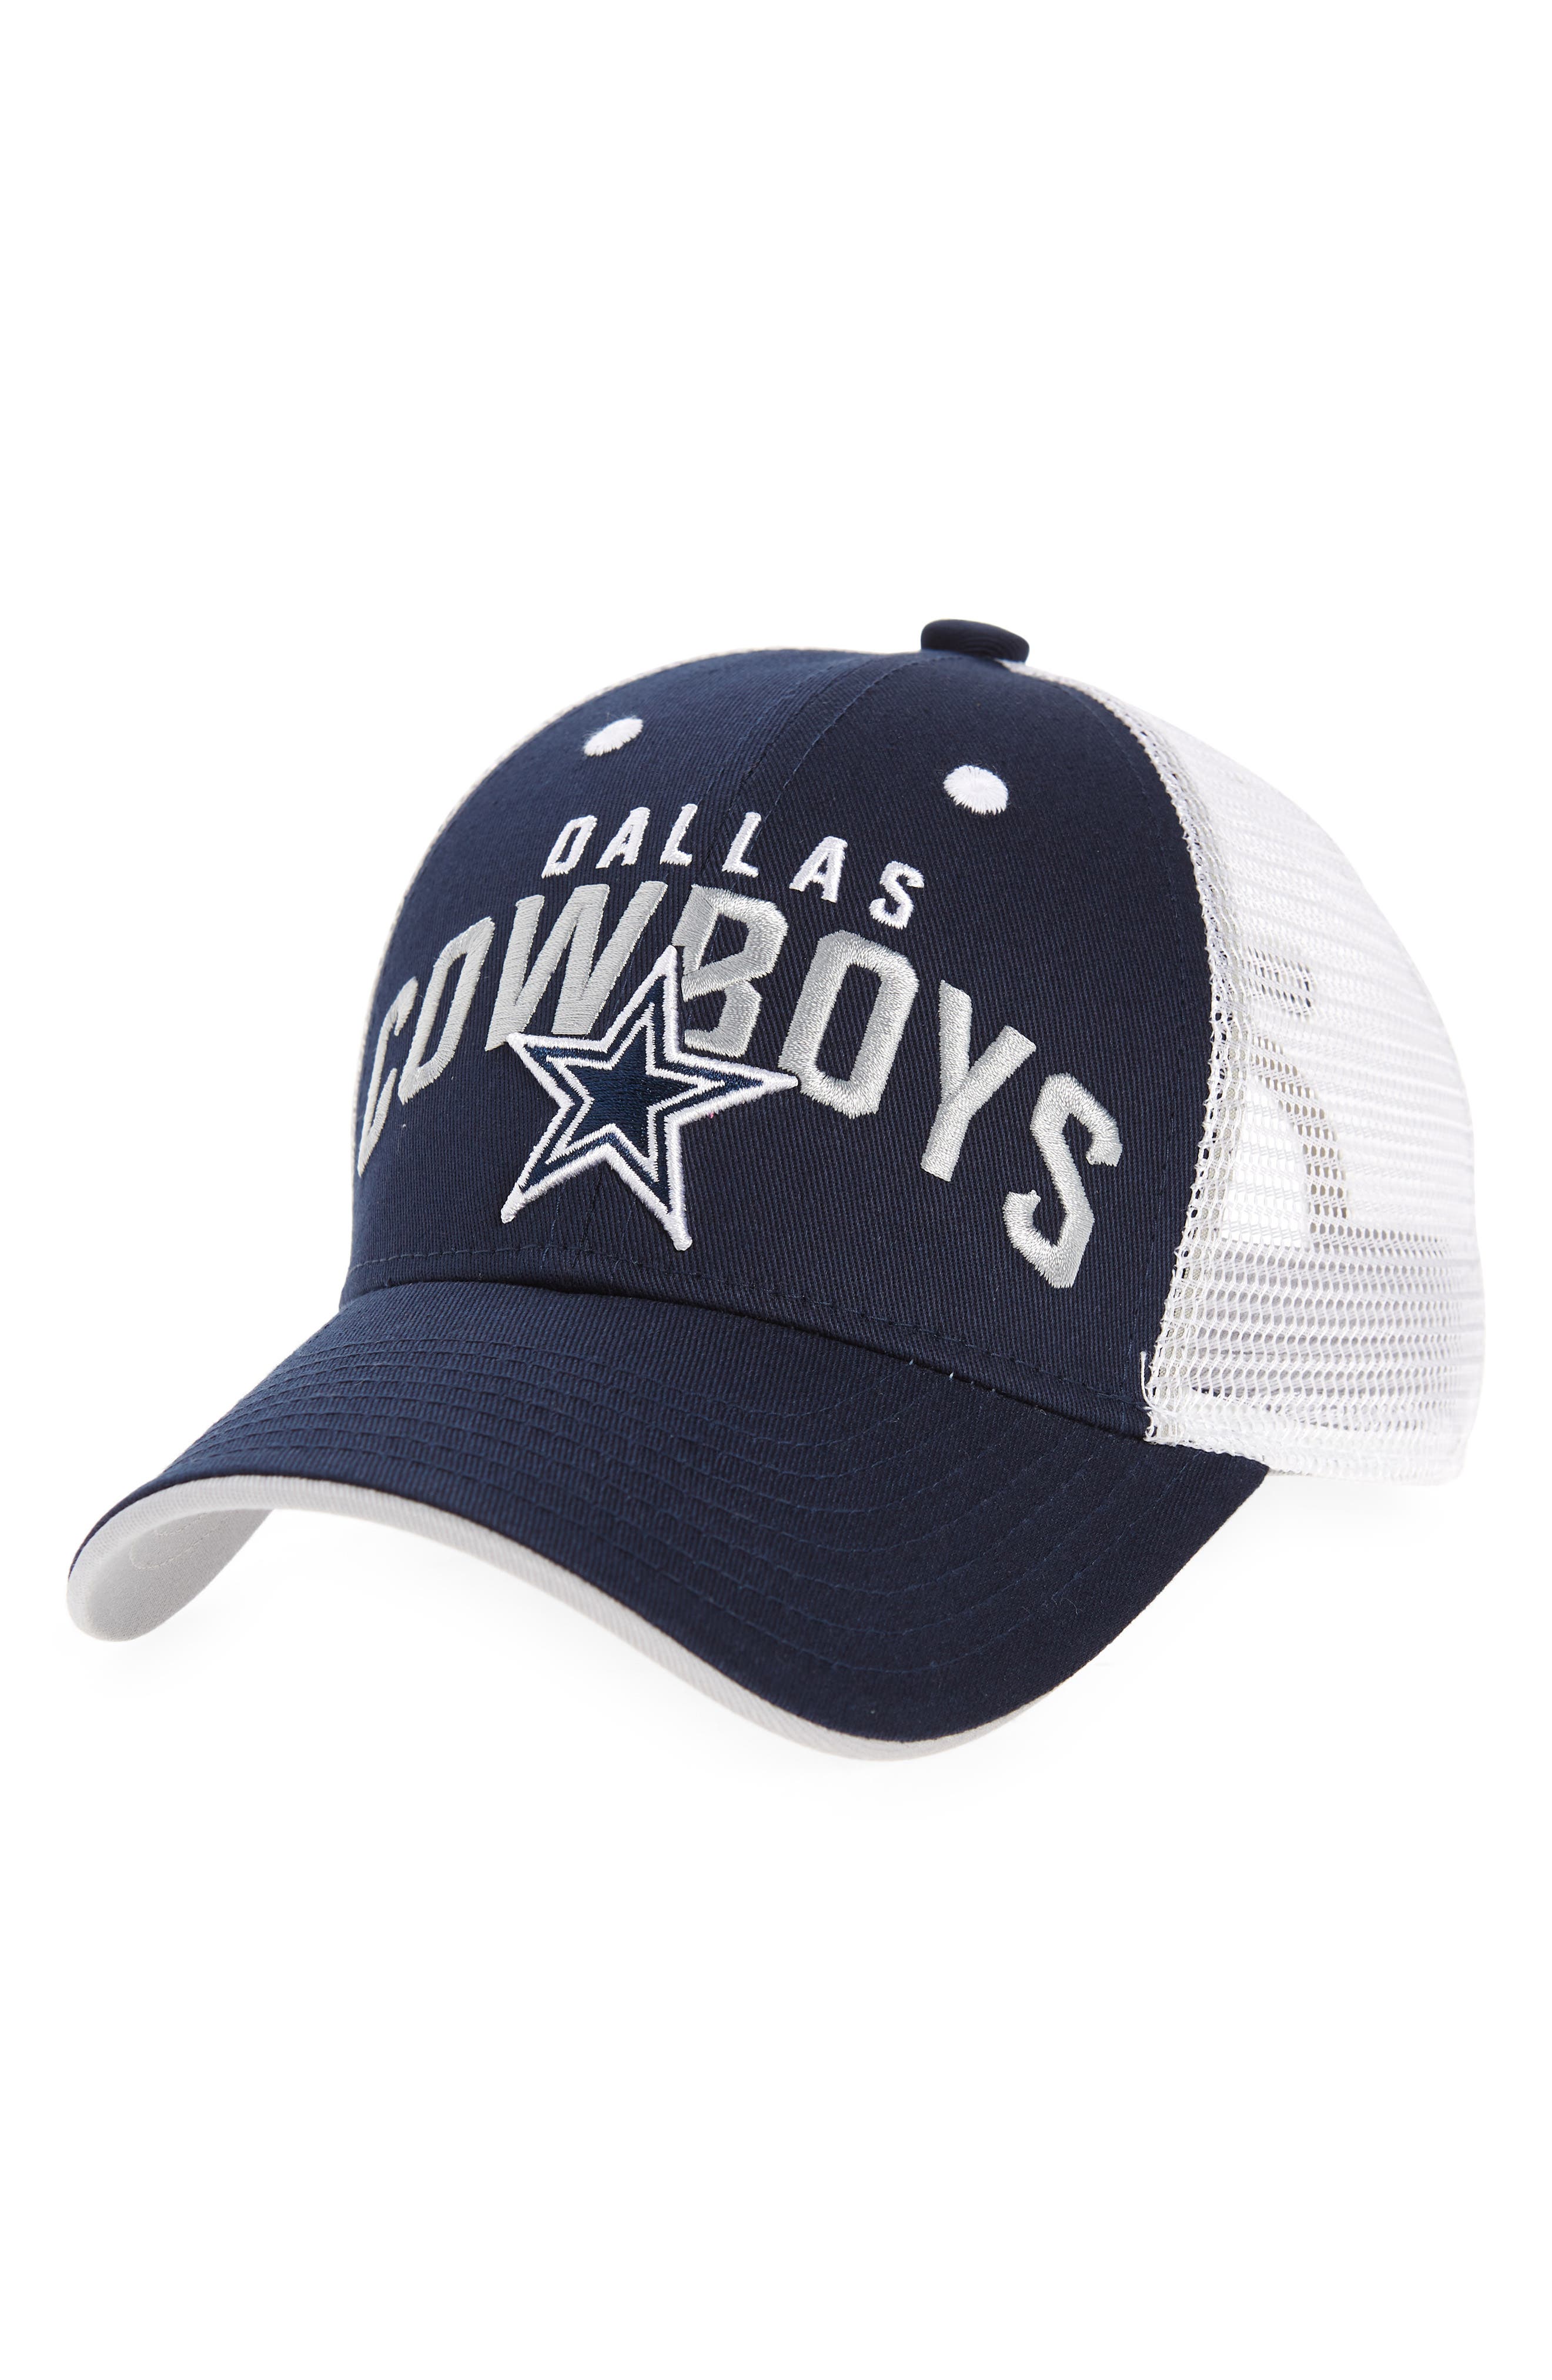 dallas cowboys shirts and hats